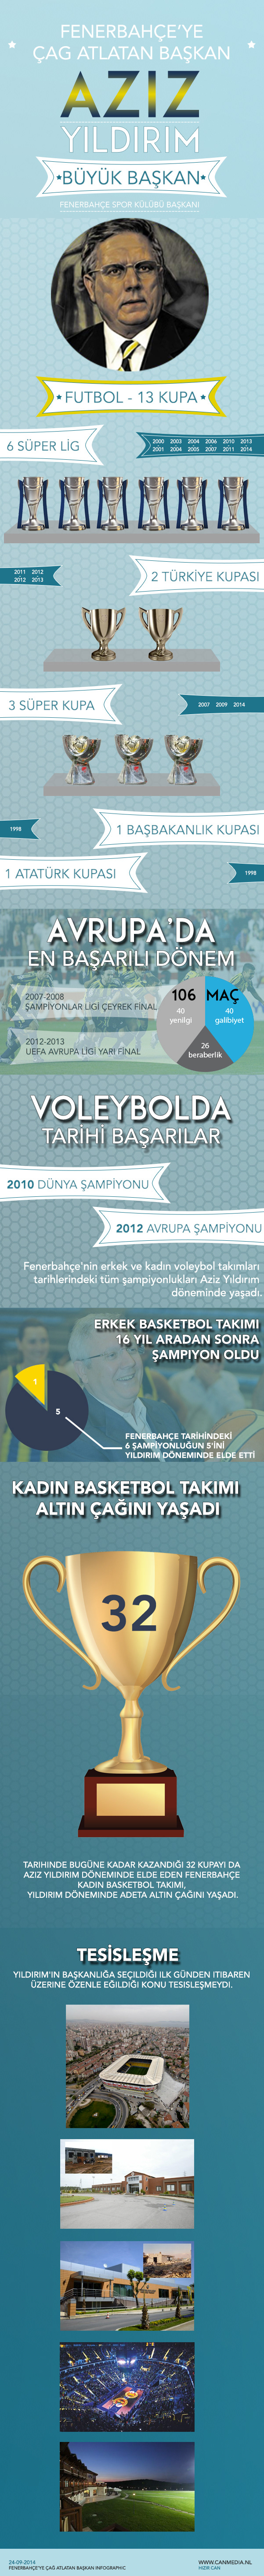 Fenerbahçe istanbul infographic infografik aziz yildirim